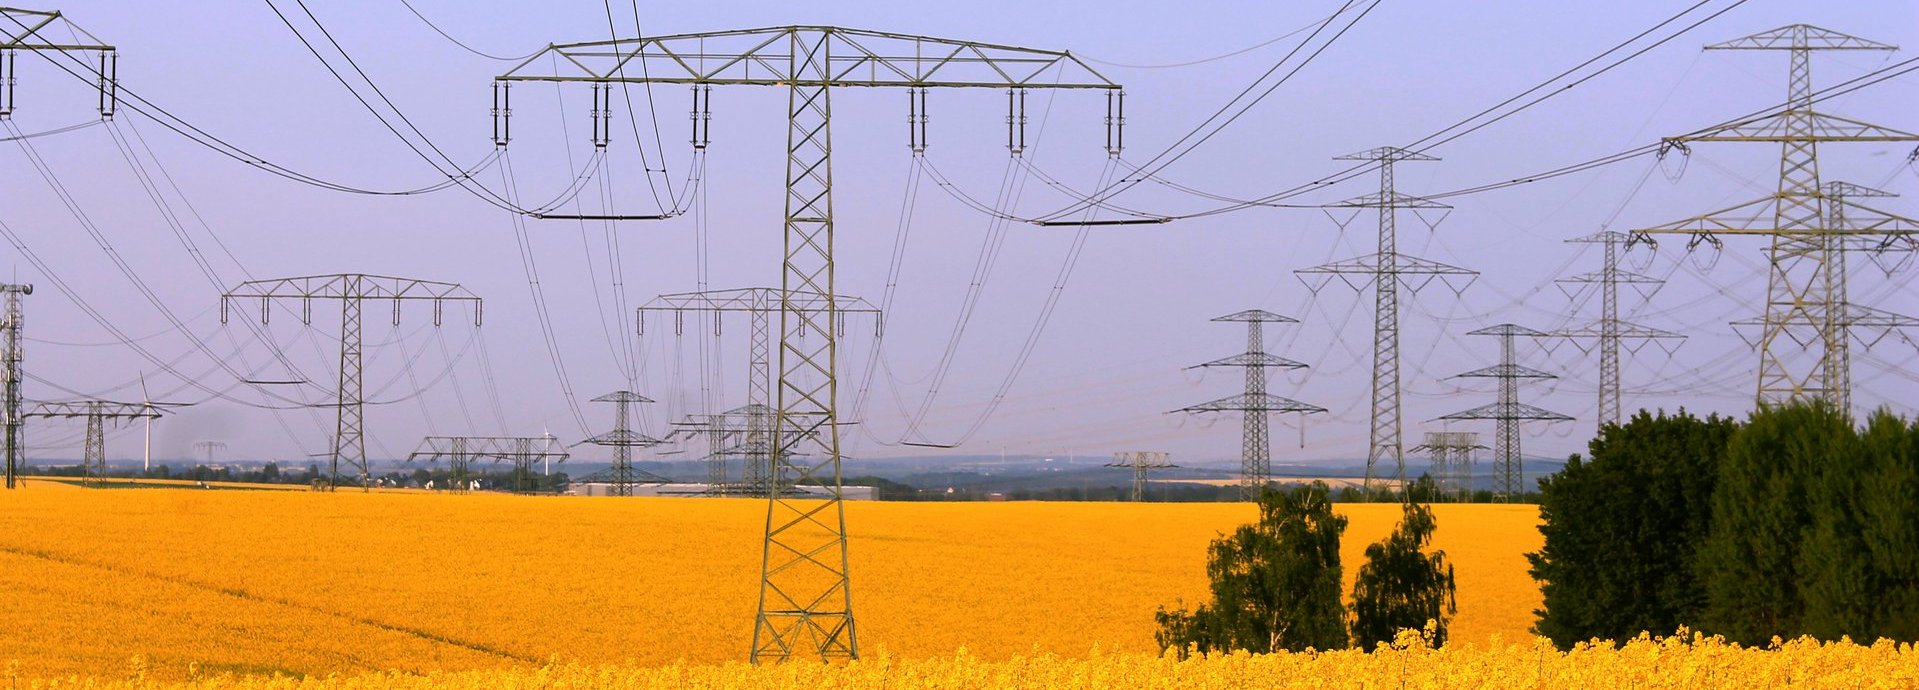 Strommasten auf einem gelben Feld vor blaurotem Himmel